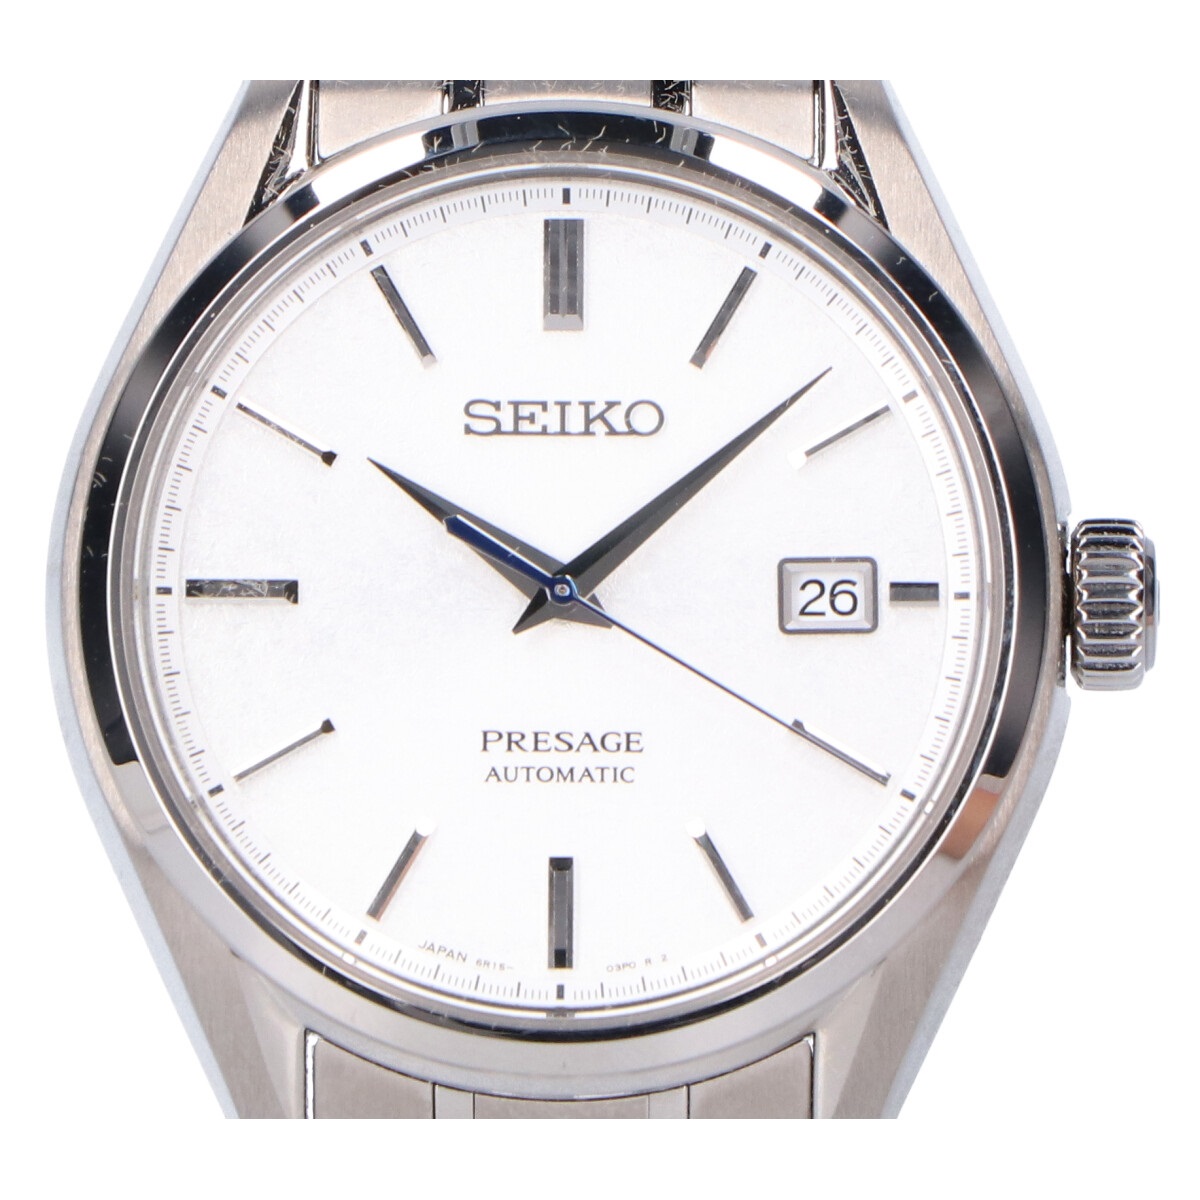 セイコーのカジュアル時計のSARX055  プレザージュ シースルーバック 手巻き付自動巻き 腕時計の買取価格・実績  2021年6月30日公開情報｜ブランド買取の【エコスタイル】